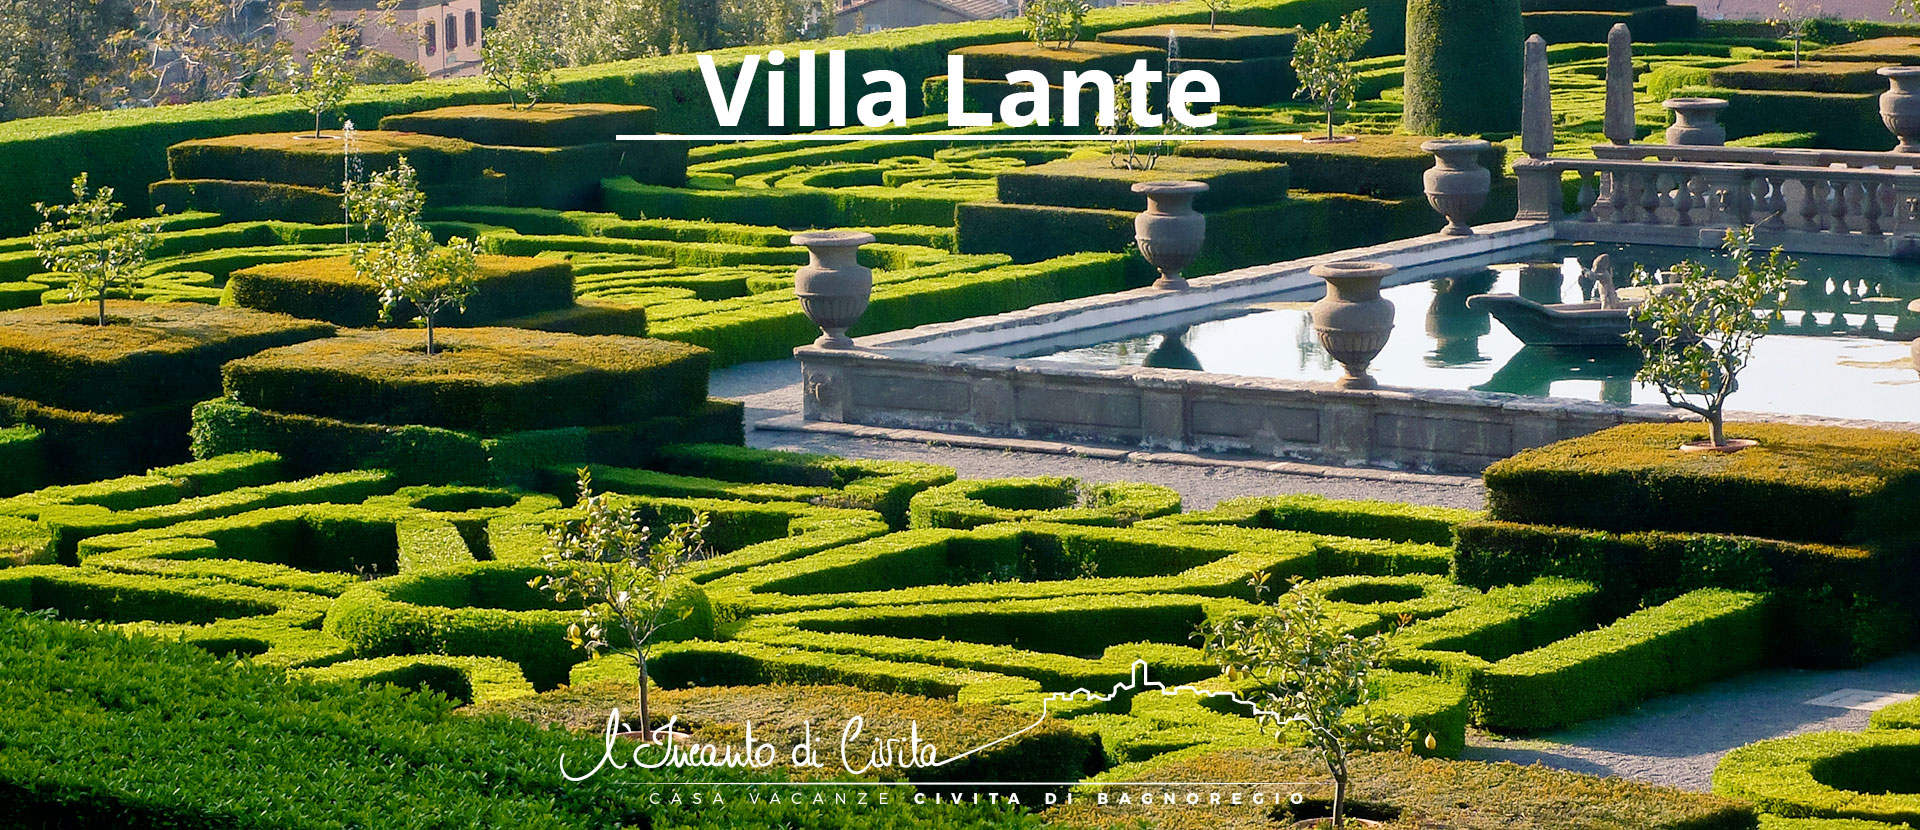 villa-lante